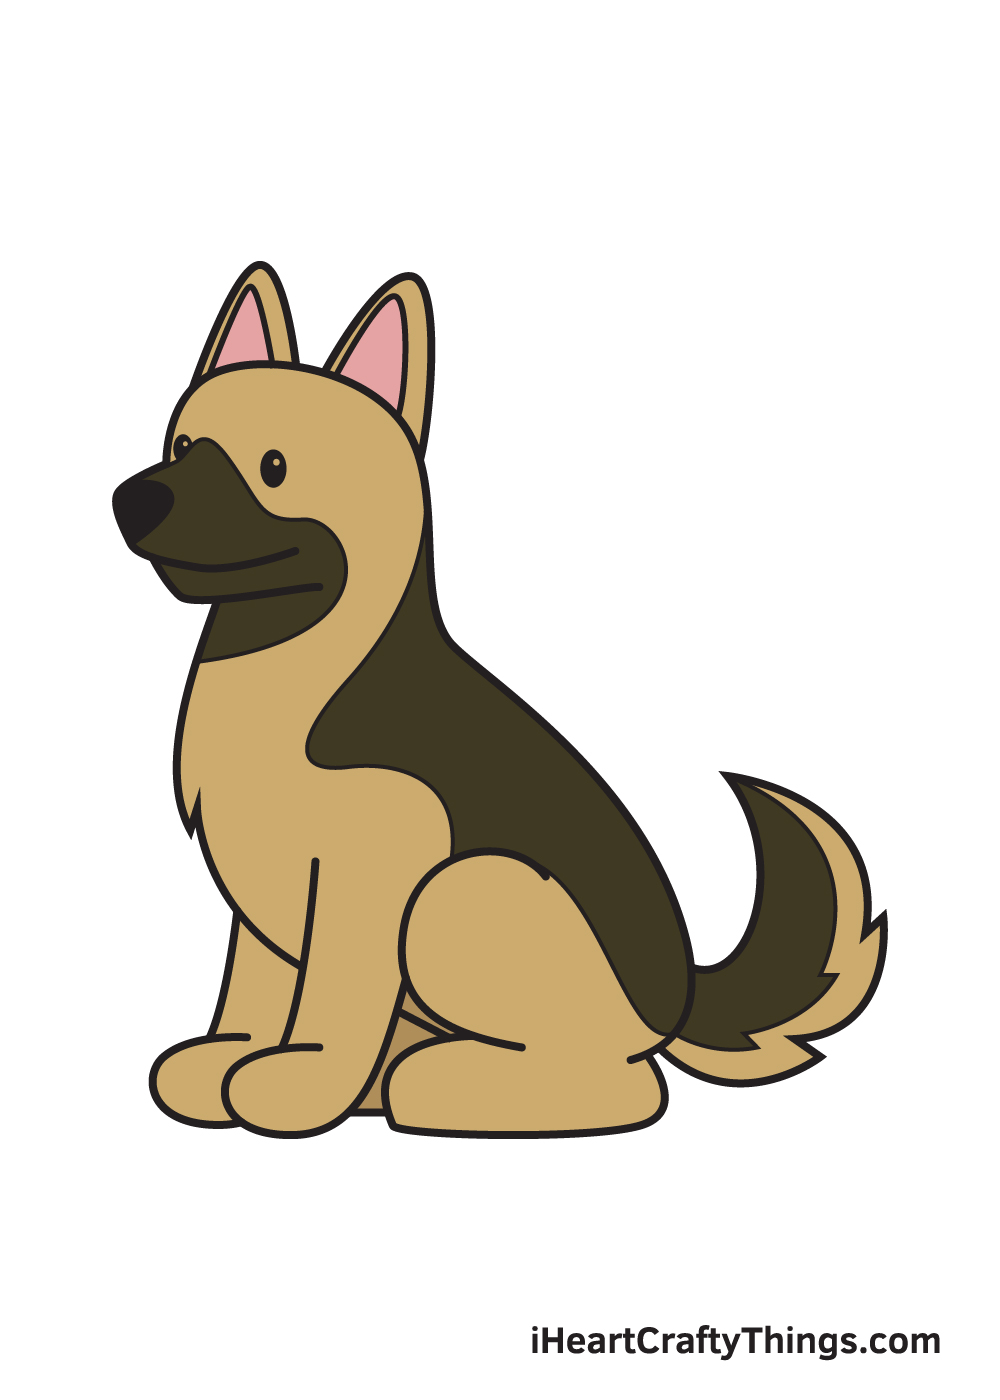 German Sheperd DRAWING – STEP 10 - Cách vẽ con chó đơn giản với 8 bước cơ bản có hướng dẫn chi tiết